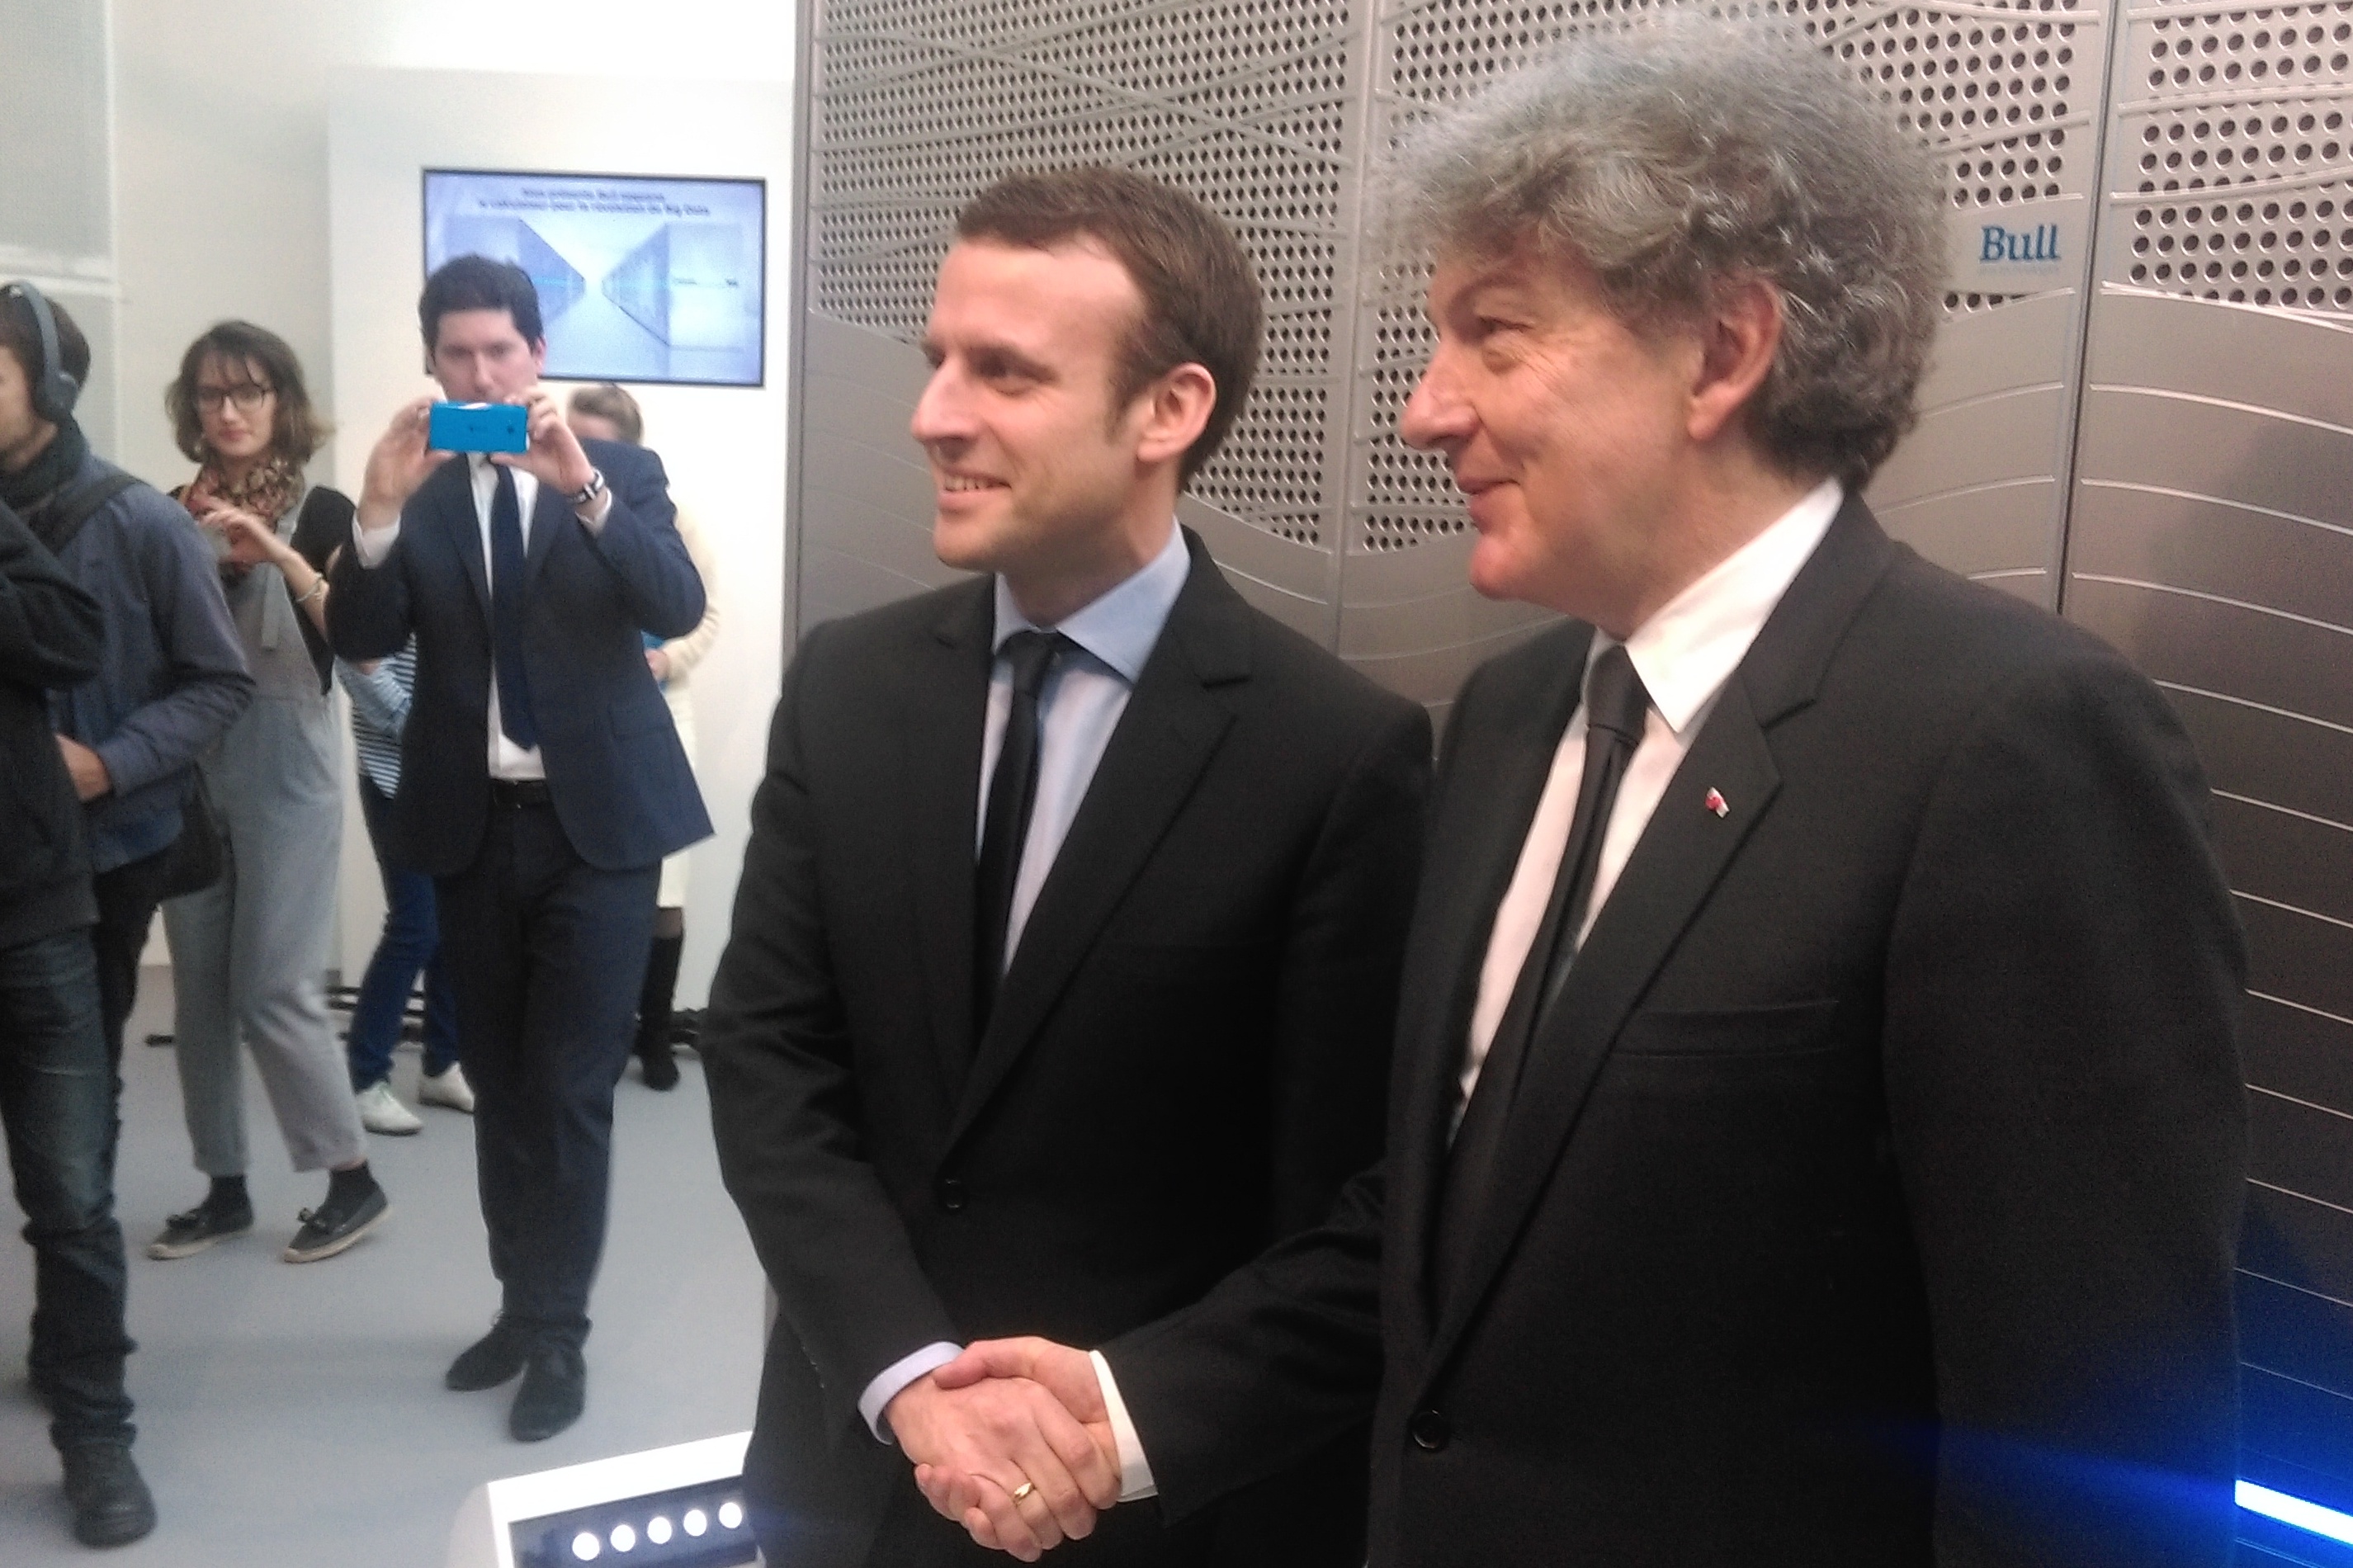 Thierry Breton, PDG d’Atos et Emmanuel Macron, ministre de l’Economie devant Bull Sequana. A puissance équivalente : un encombrement et une consommation divisés par 10 et une masse divisée par 2. ©Alliancy